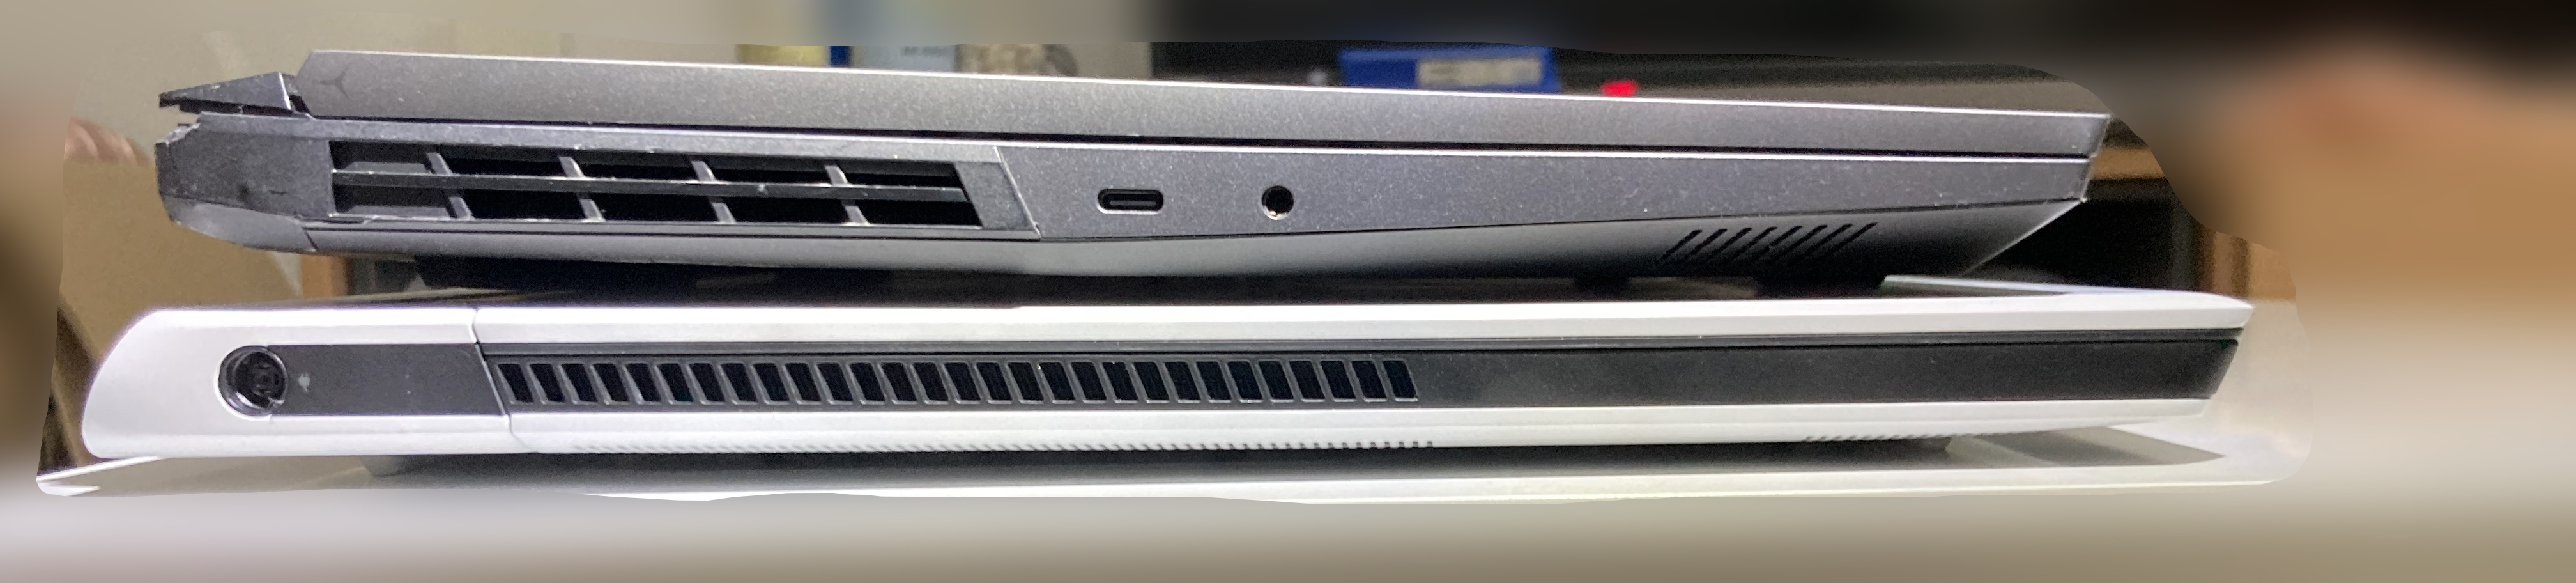 上为R9000P，下为Alienware x17，很明显能看出厚度区别